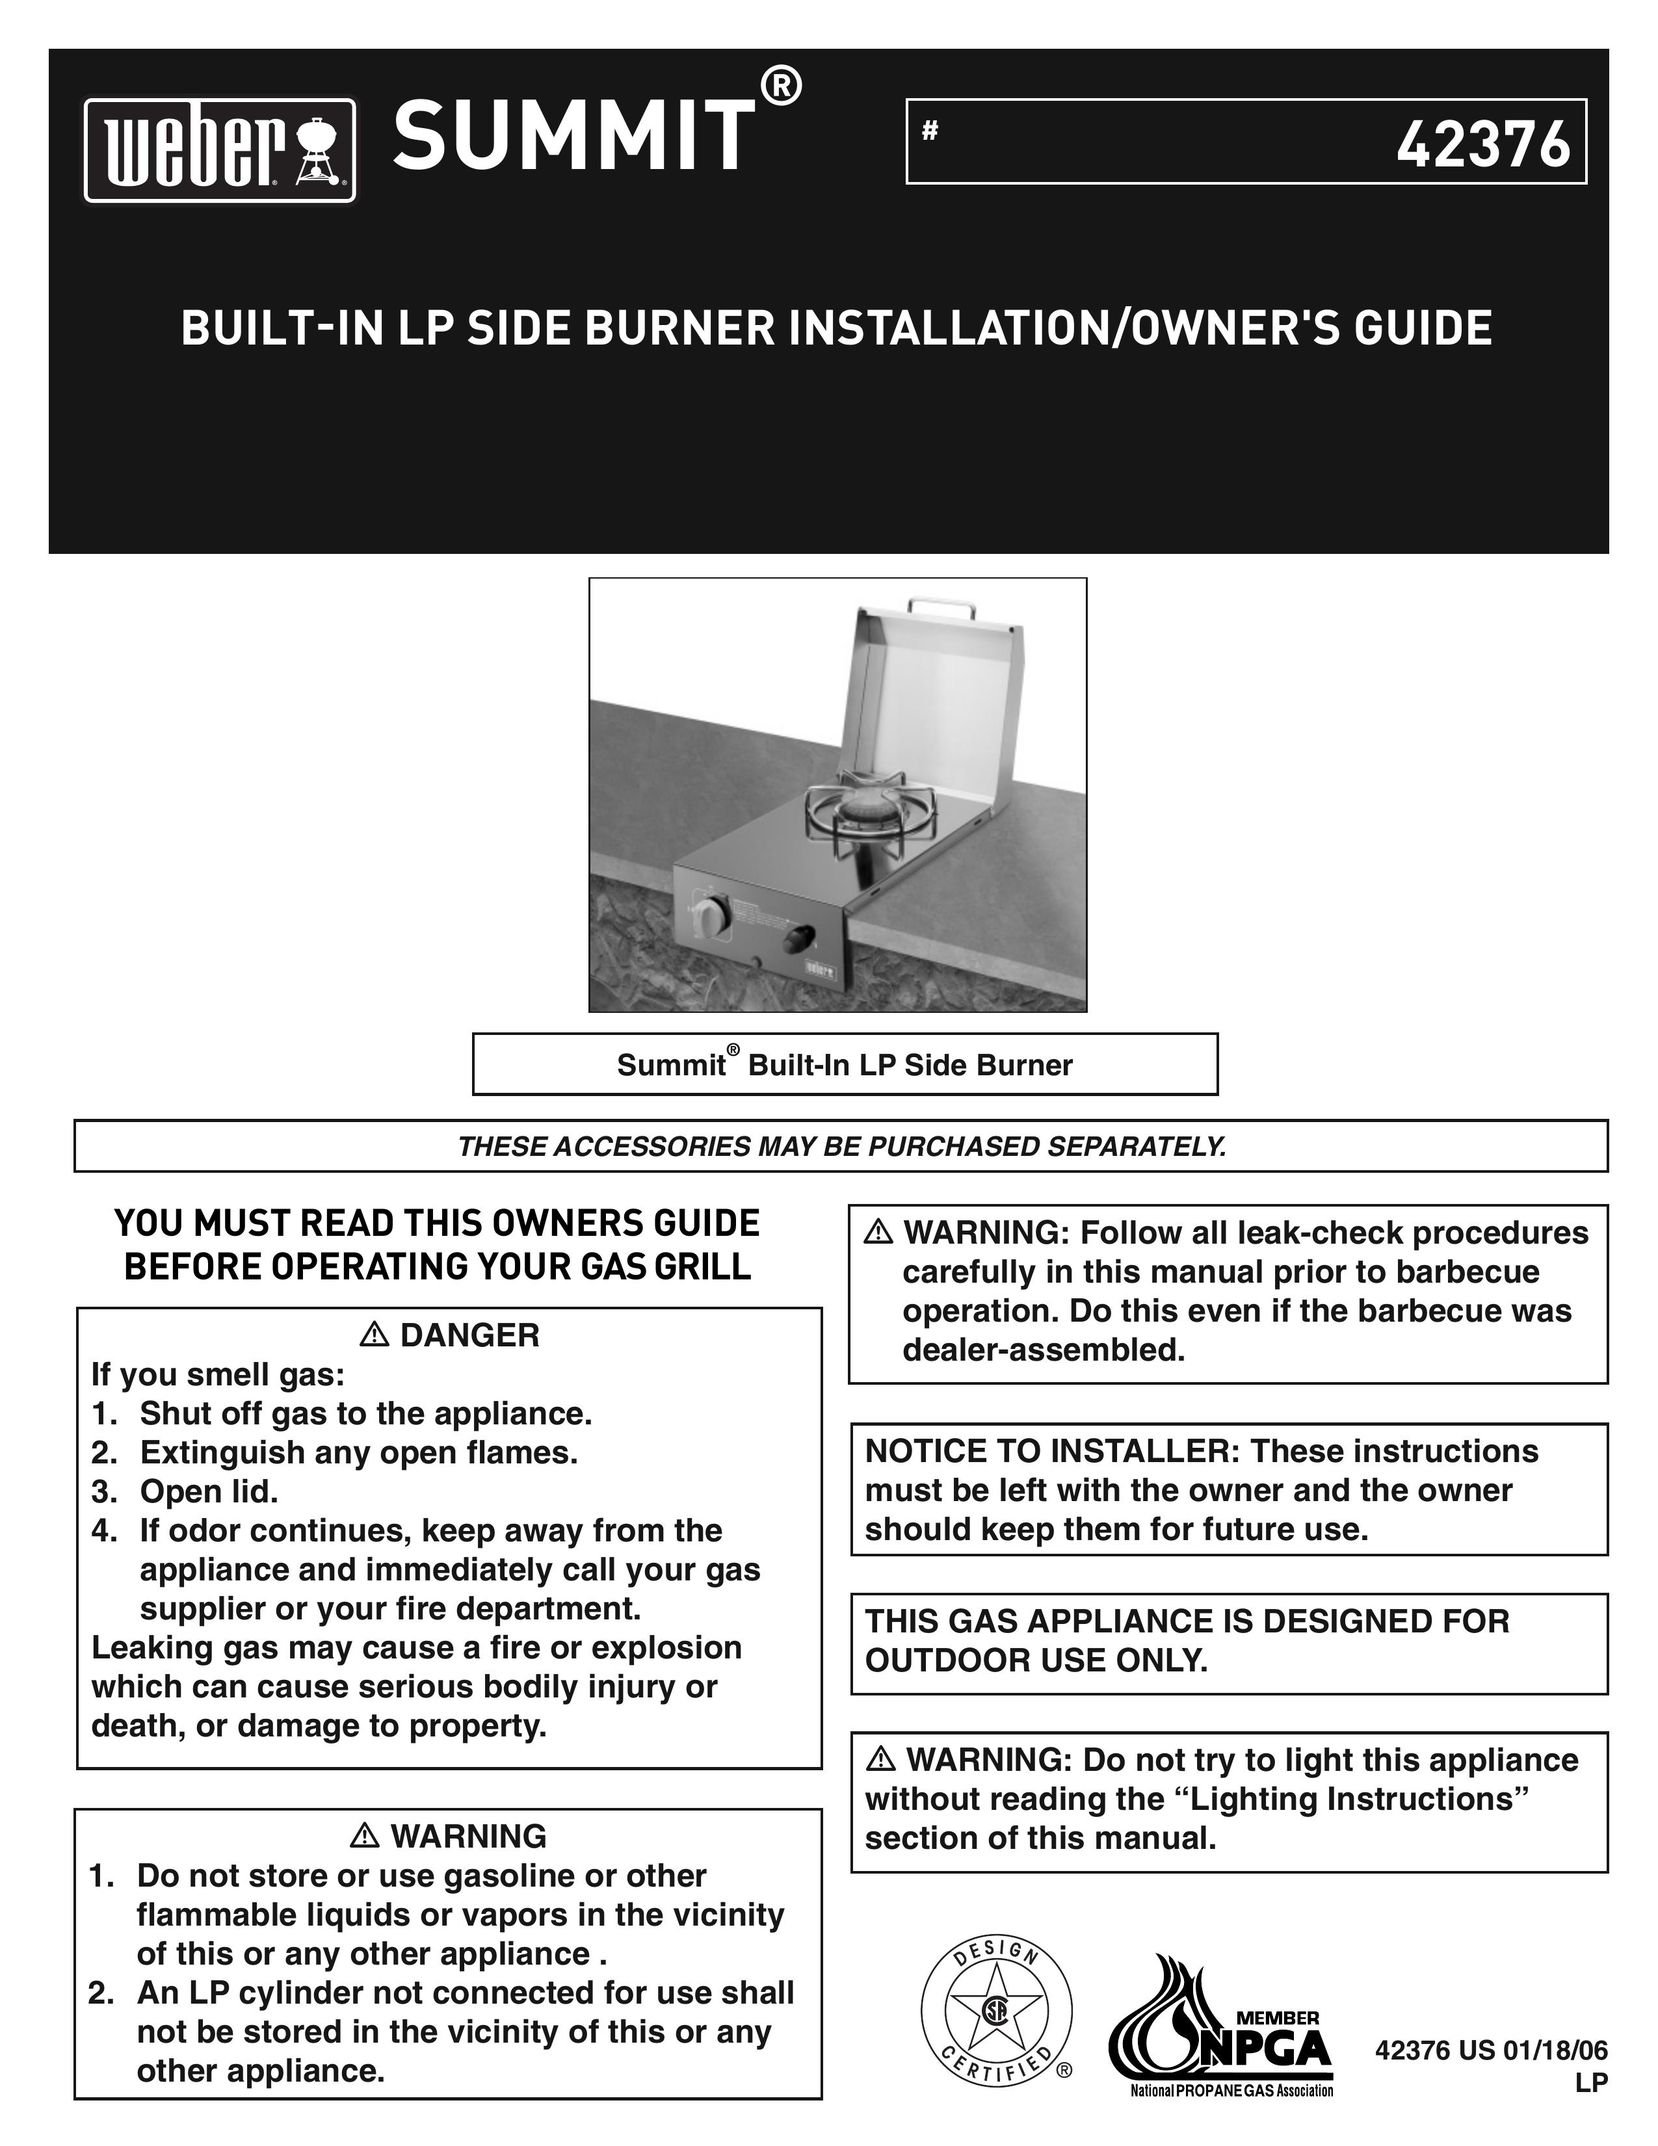 Weber Built In LP Side Burner Burner User Manual